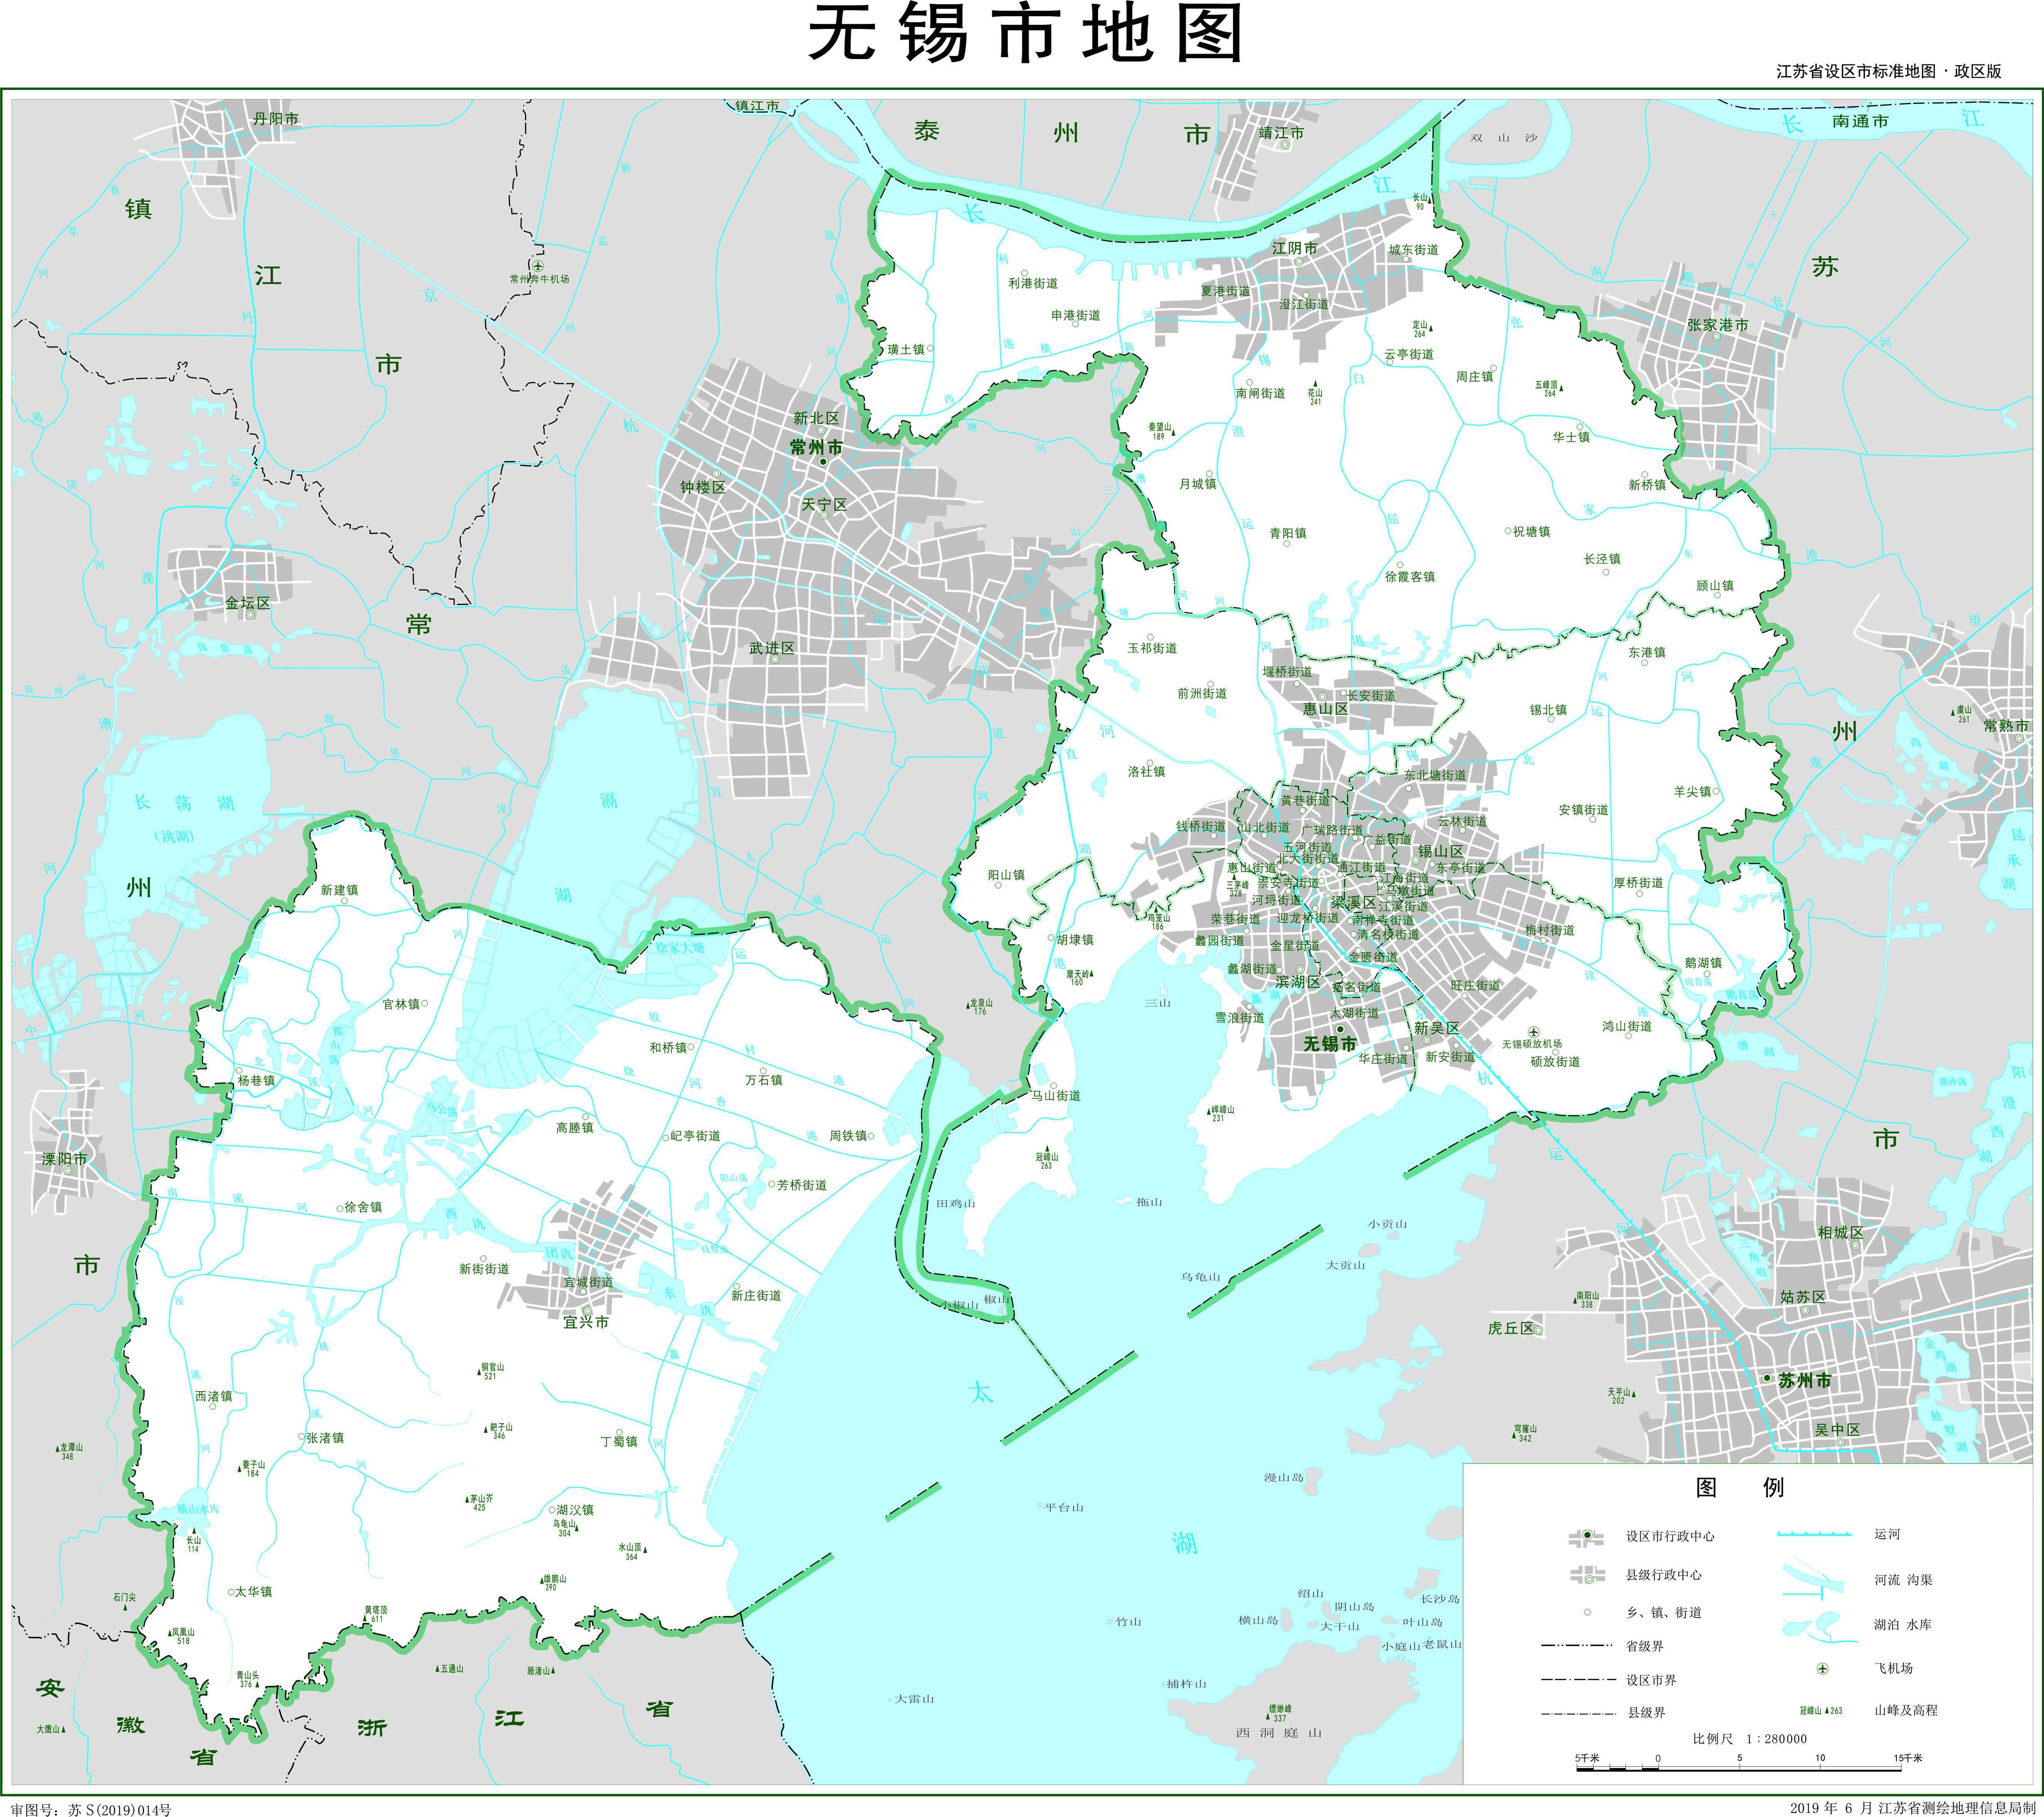 江苏省无锡市地图 区域版 基础要素版